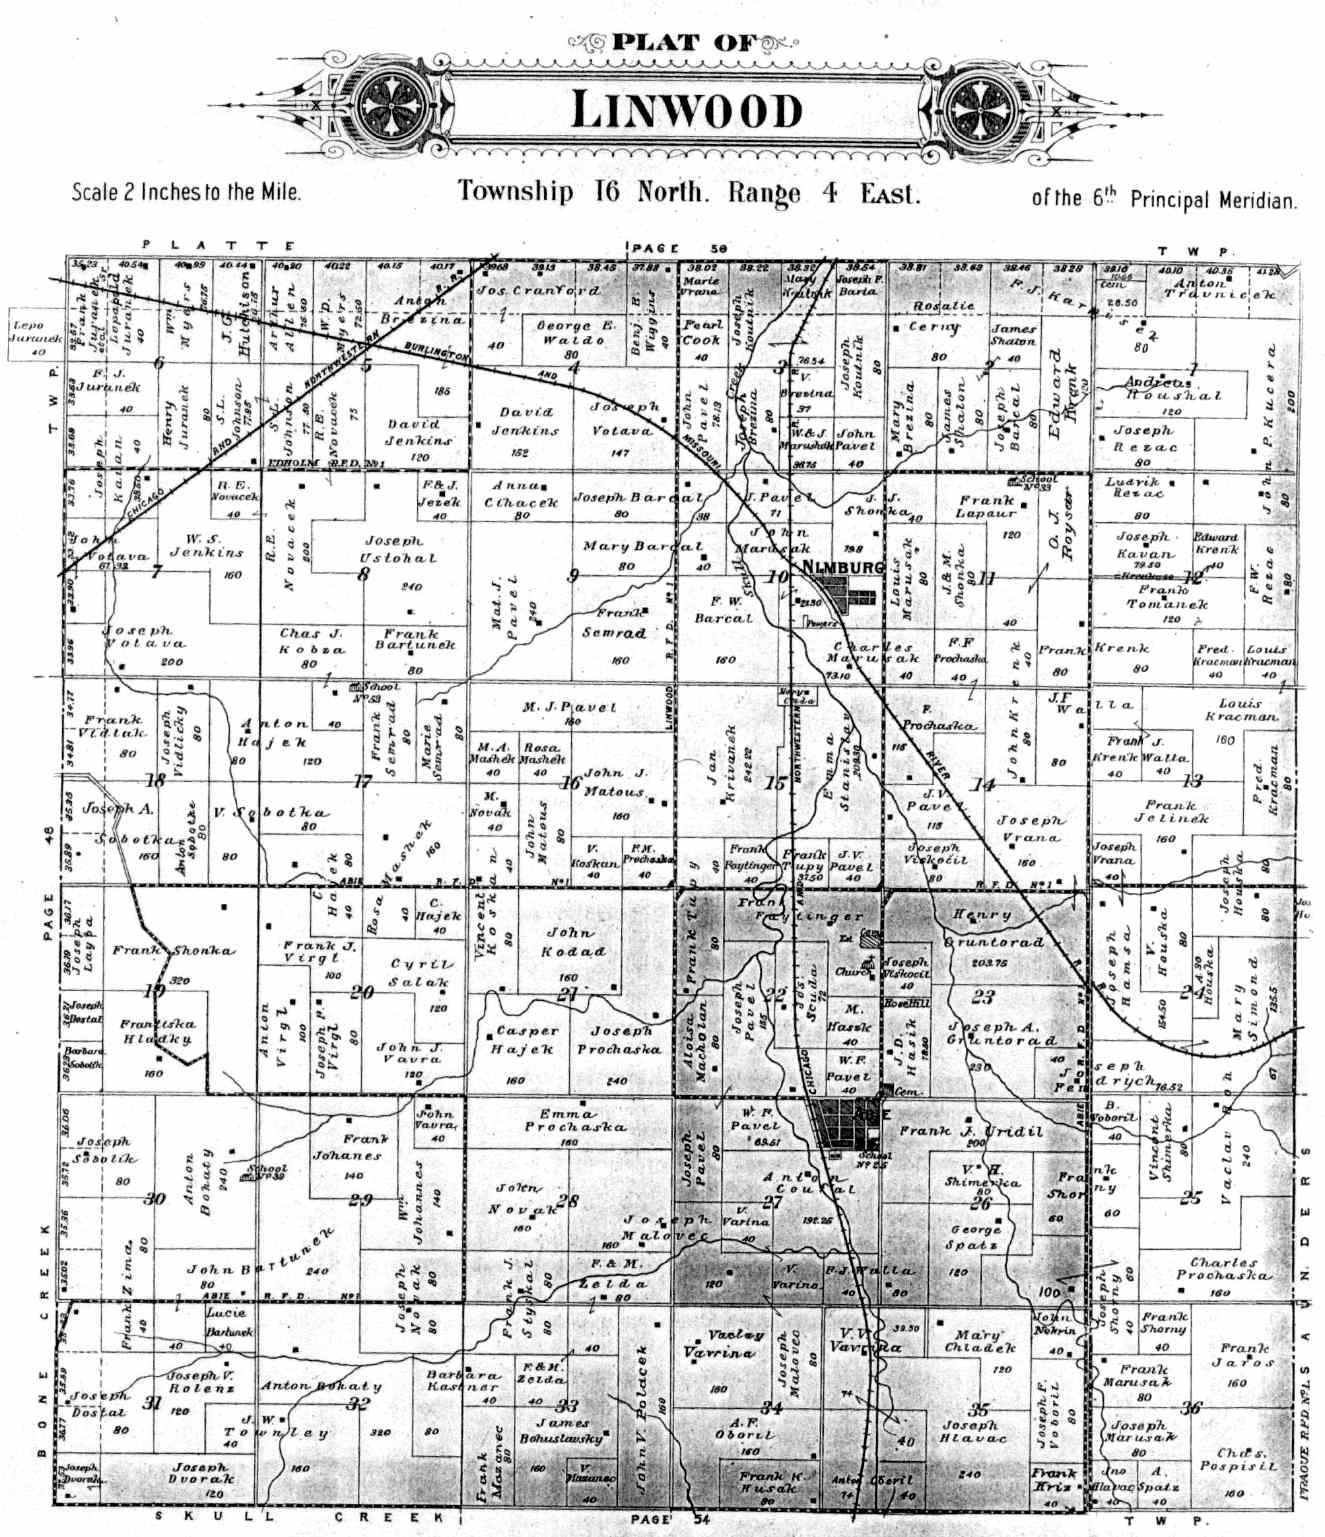 Linwood Township Butler County Nebraska Plat Map for 1906